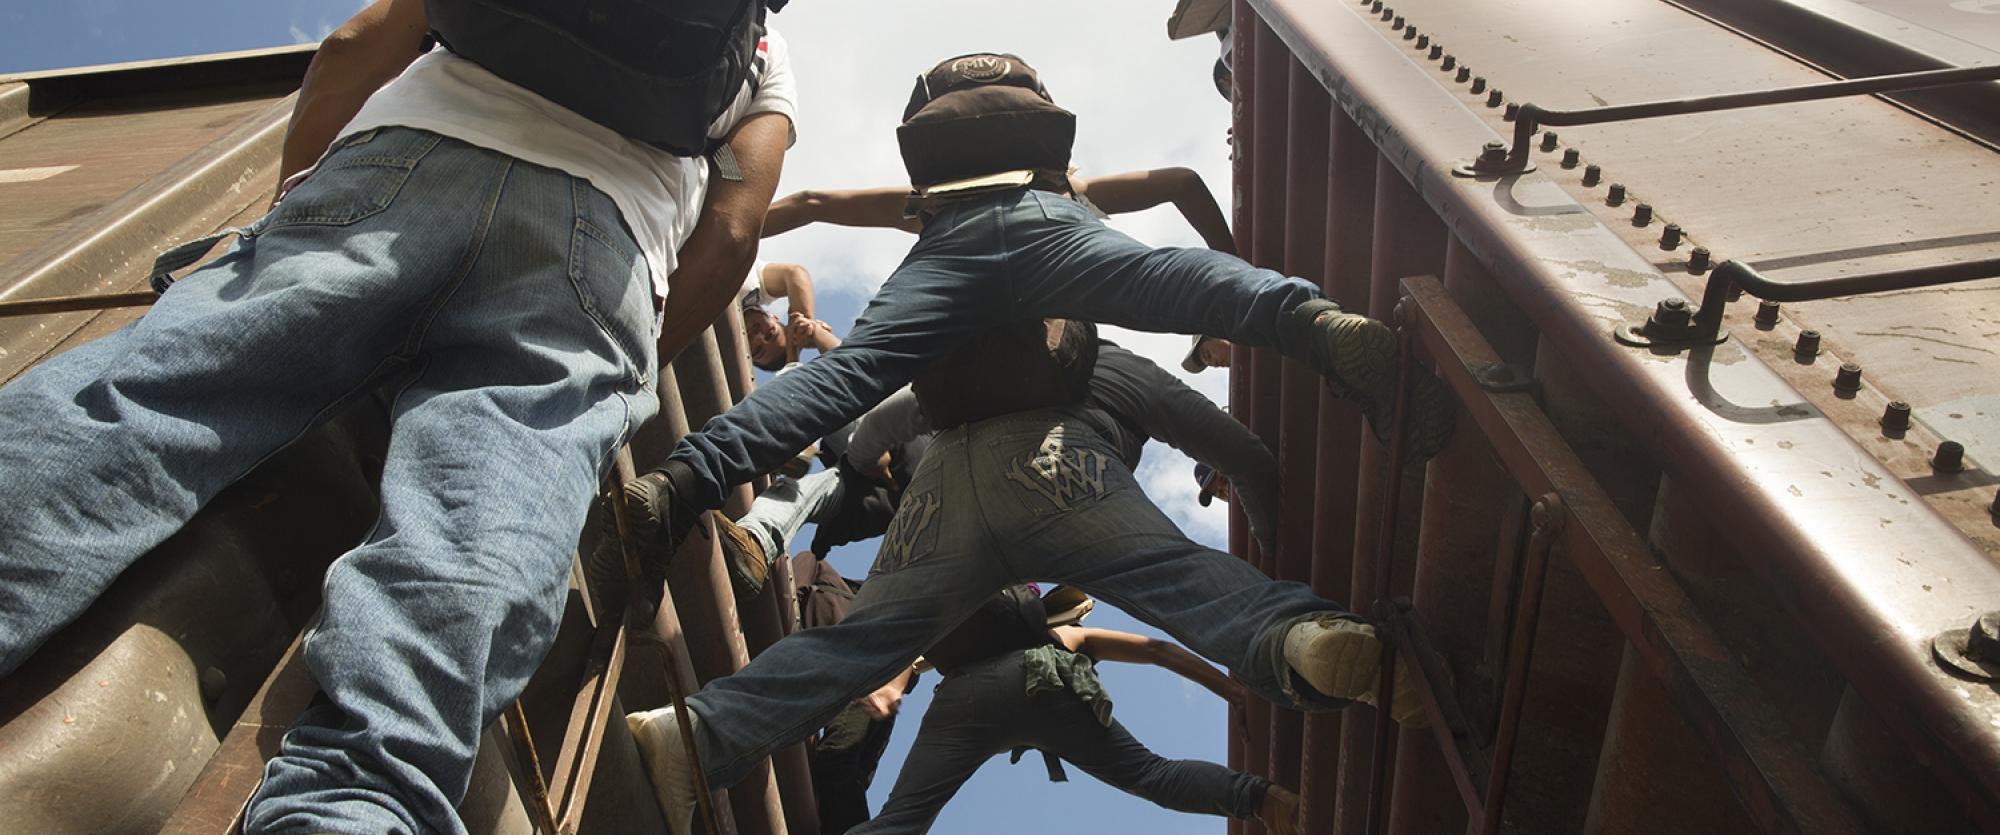 Des migrants sur la route de l'exode, ici au Mexique. 2014